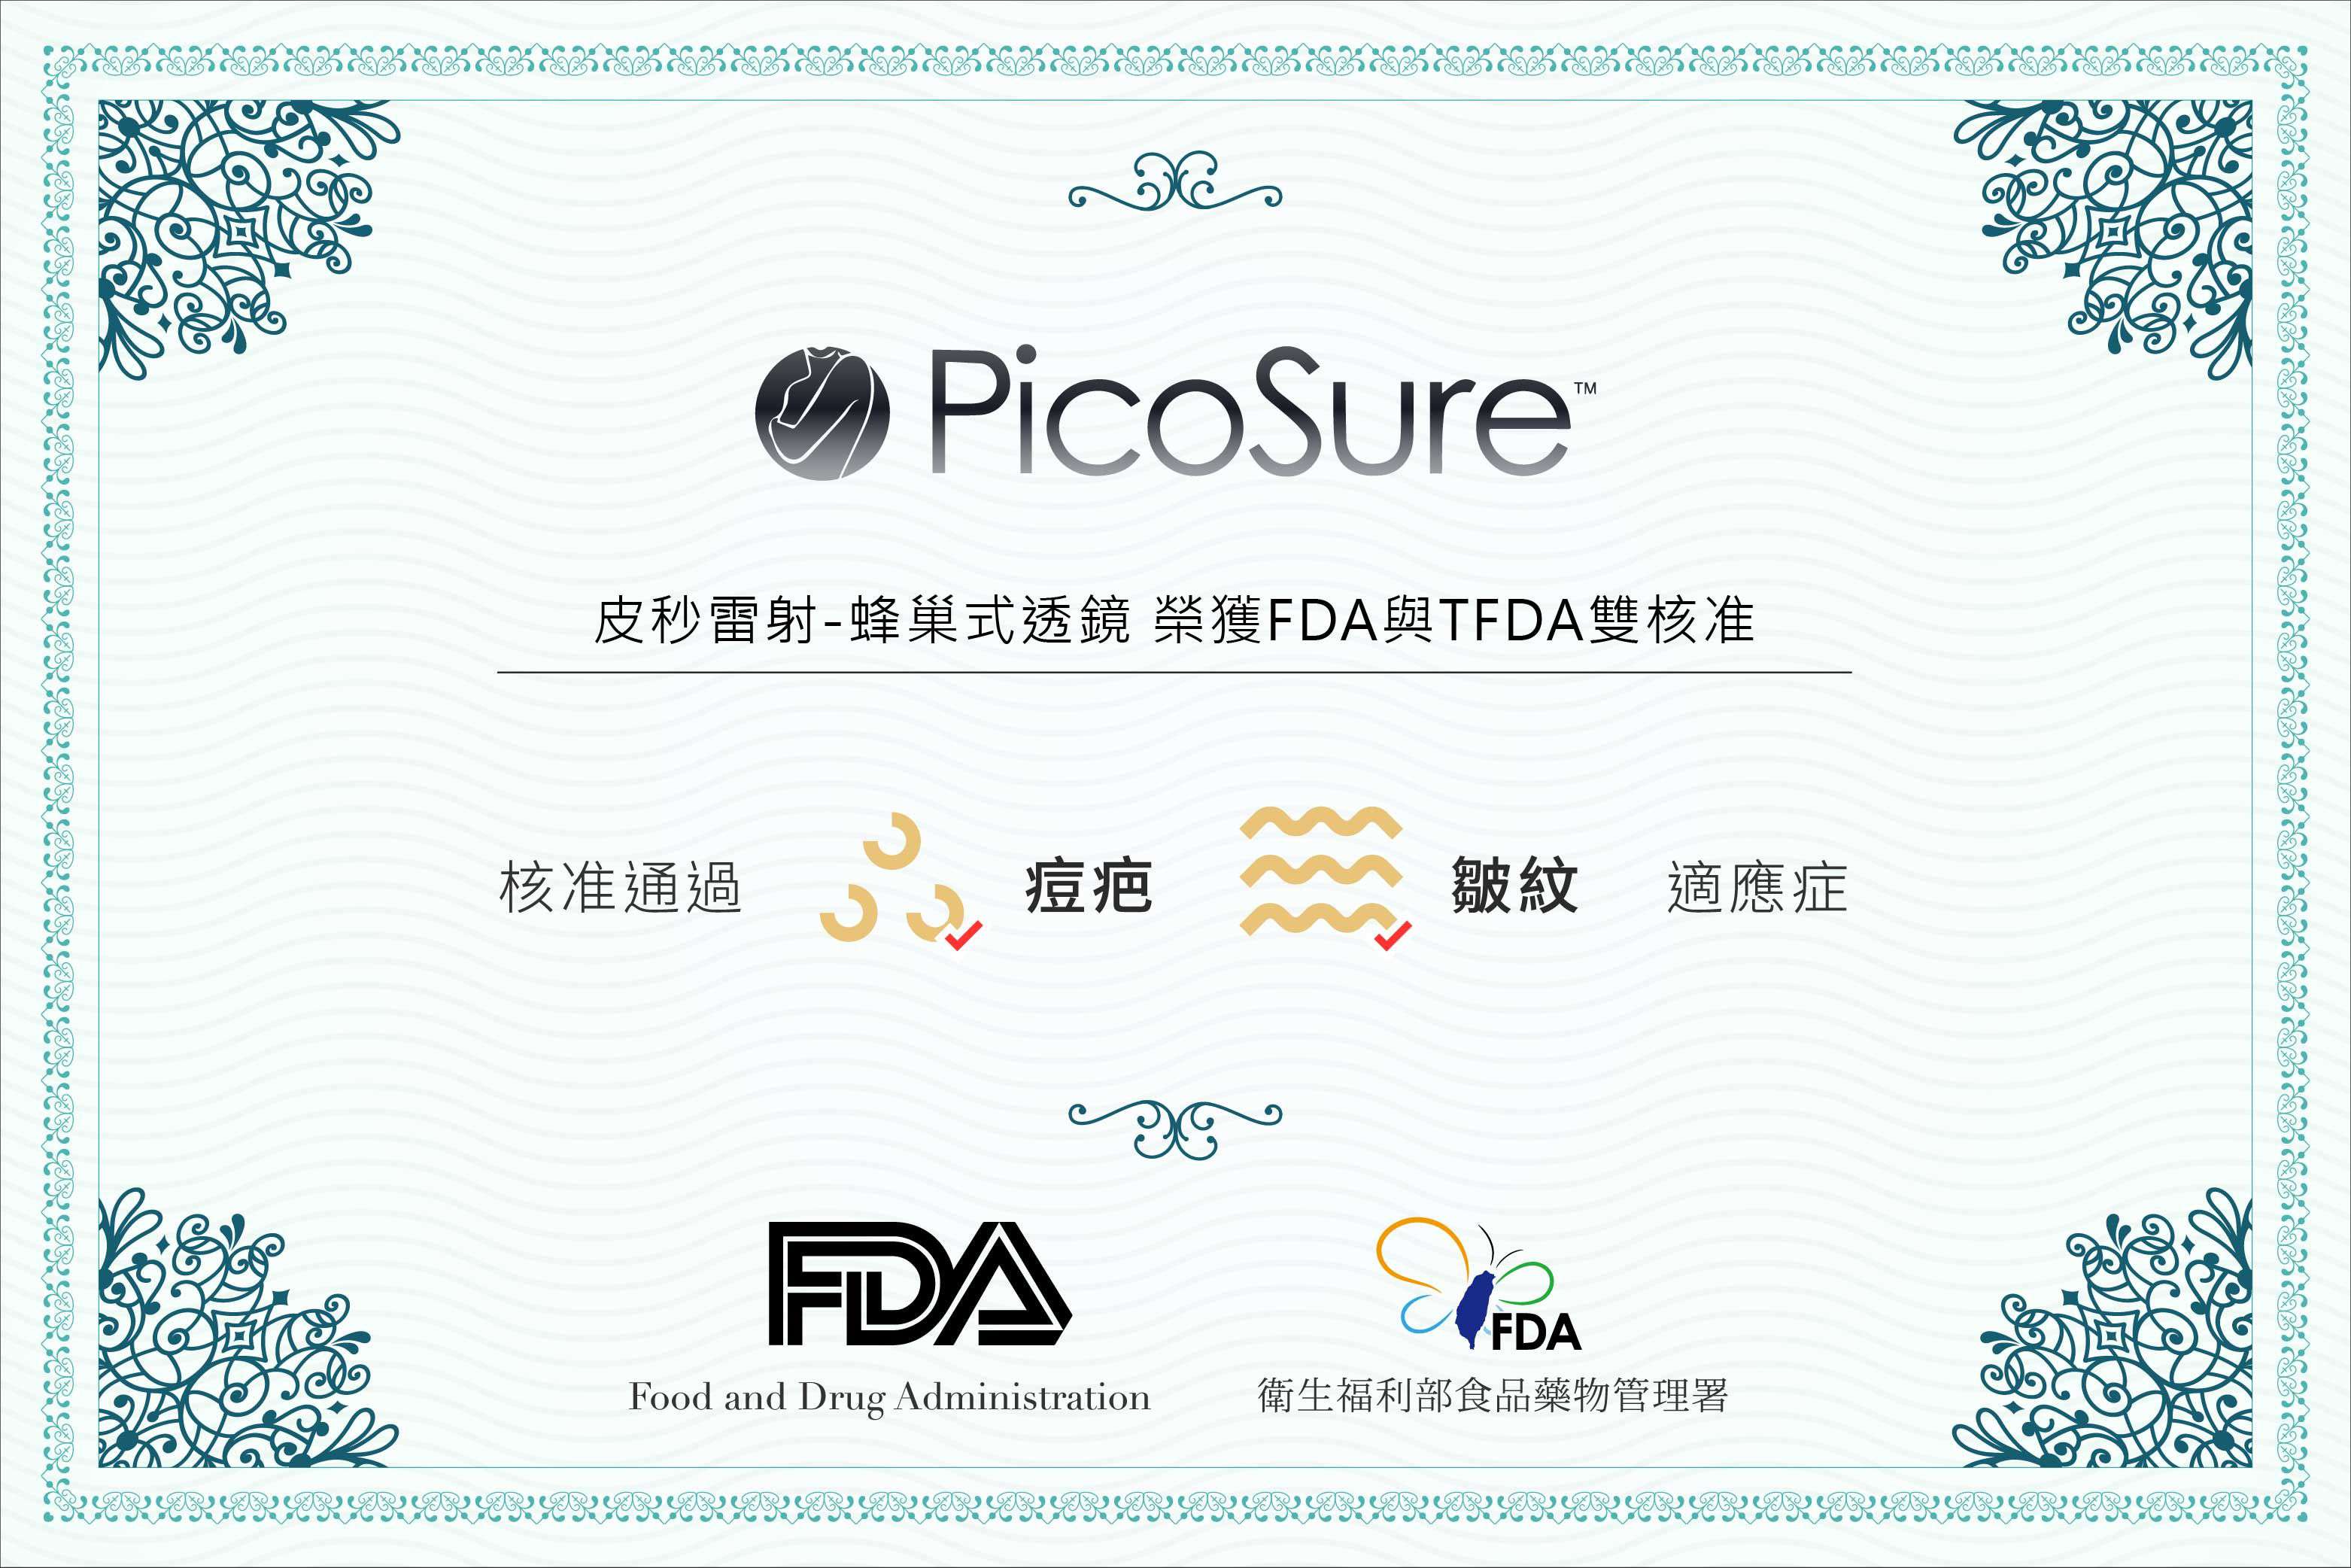 PICOSURE蜂巢皮秒榮獲FDA與TFDA雙核准